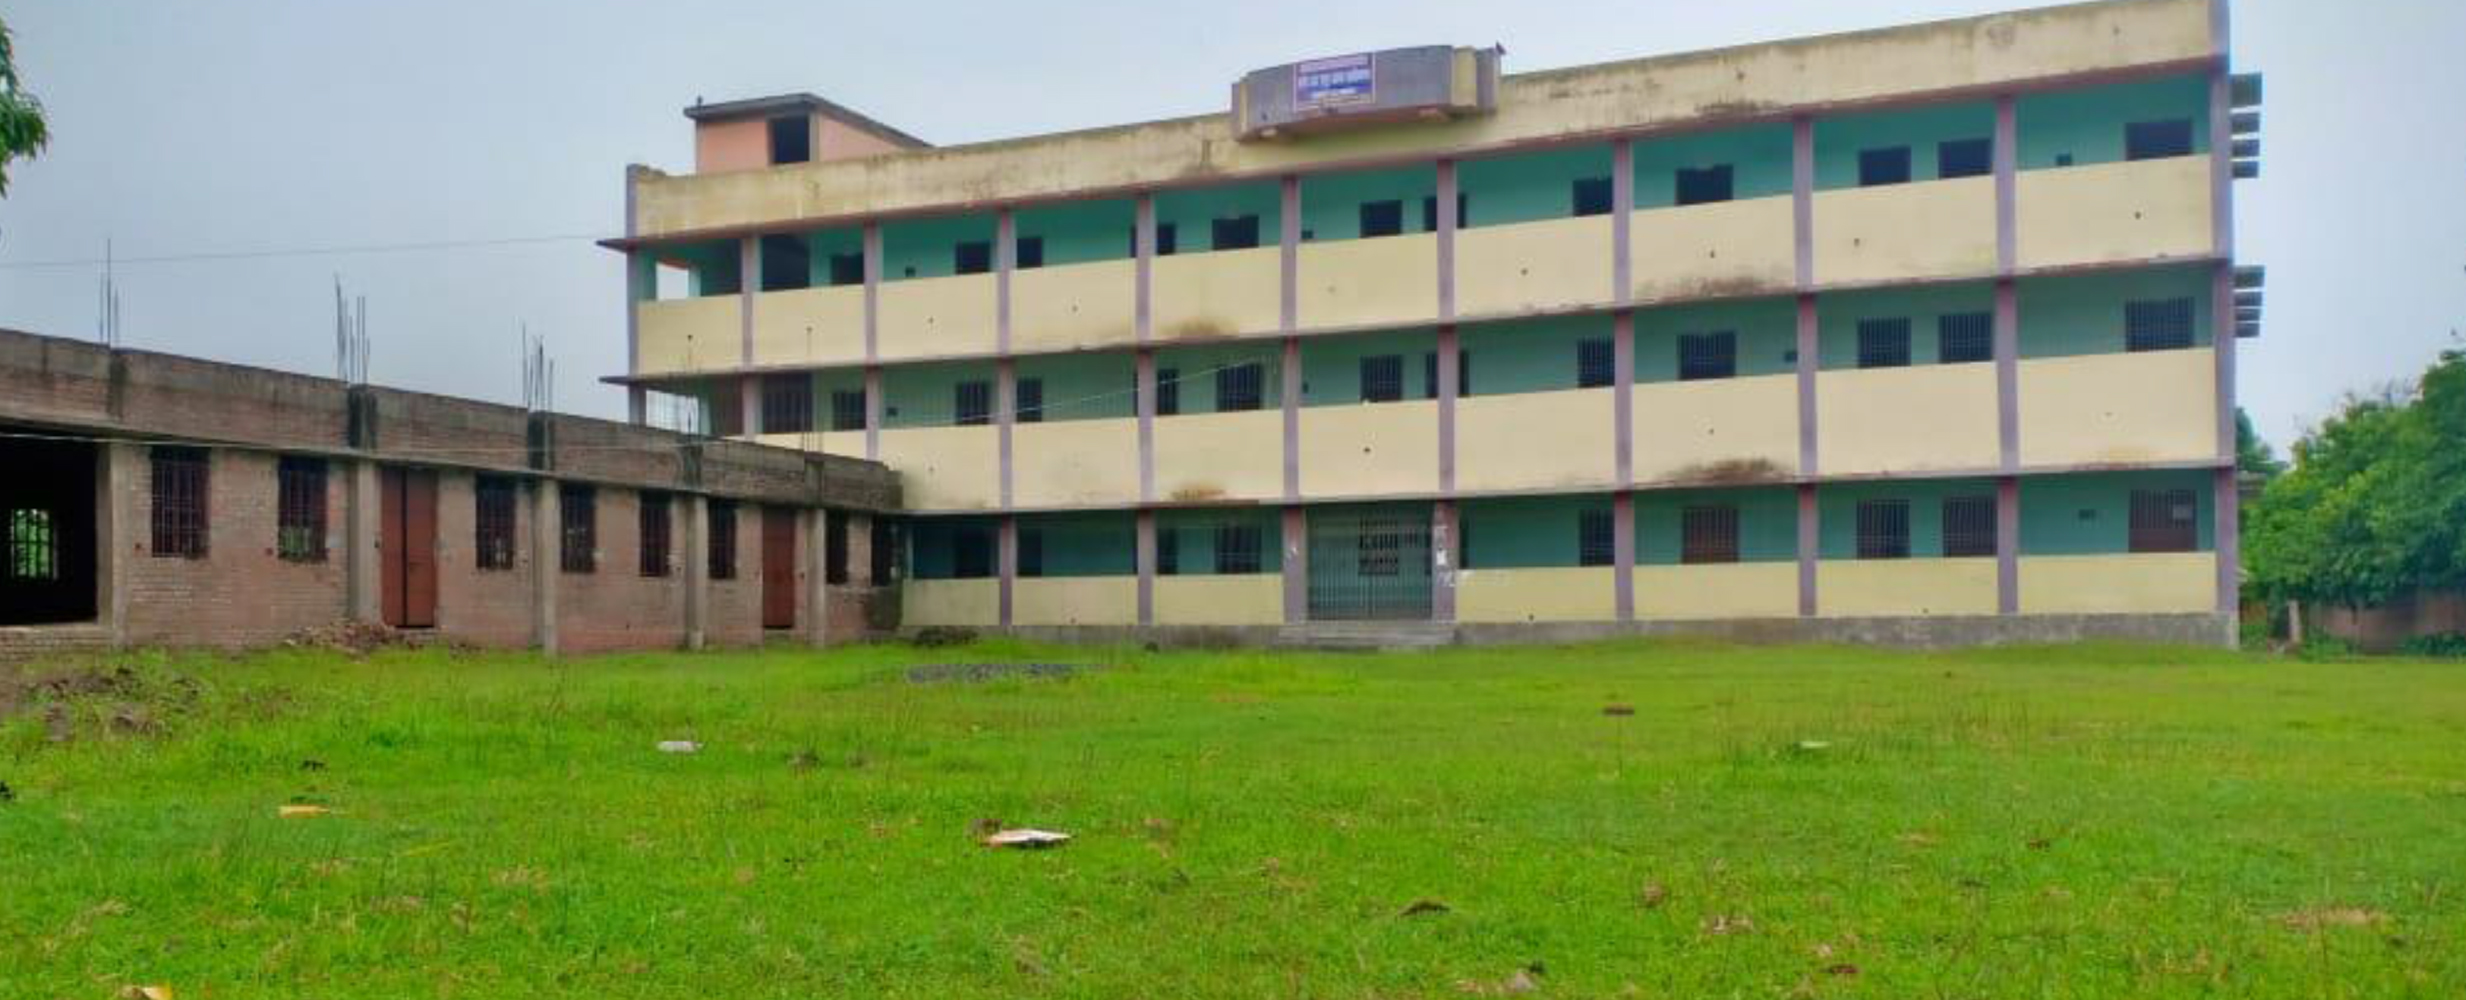 Ameer Hasan Shakoor Ahmad College, Madhubani